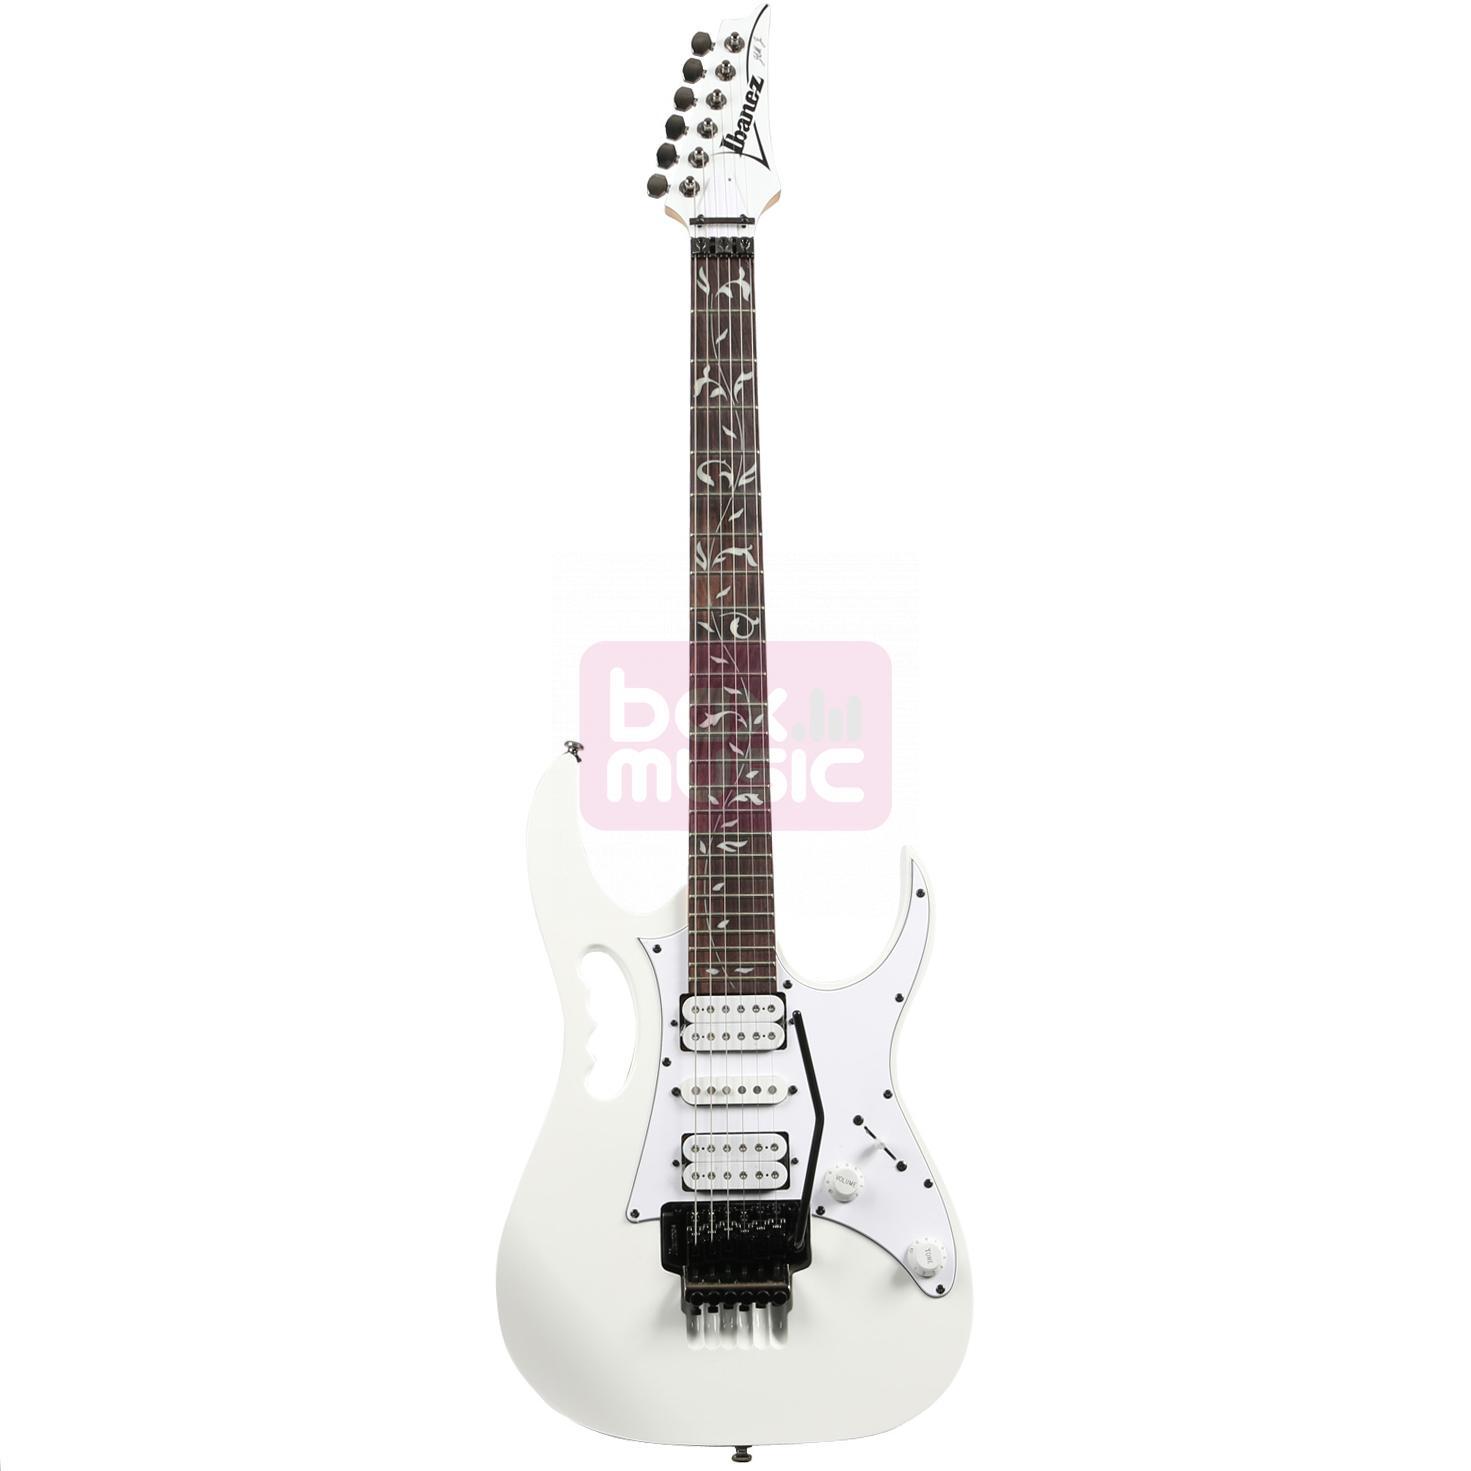 Ibanez JEMJR-WH Steve Vai Signature elektrische gitaar wit